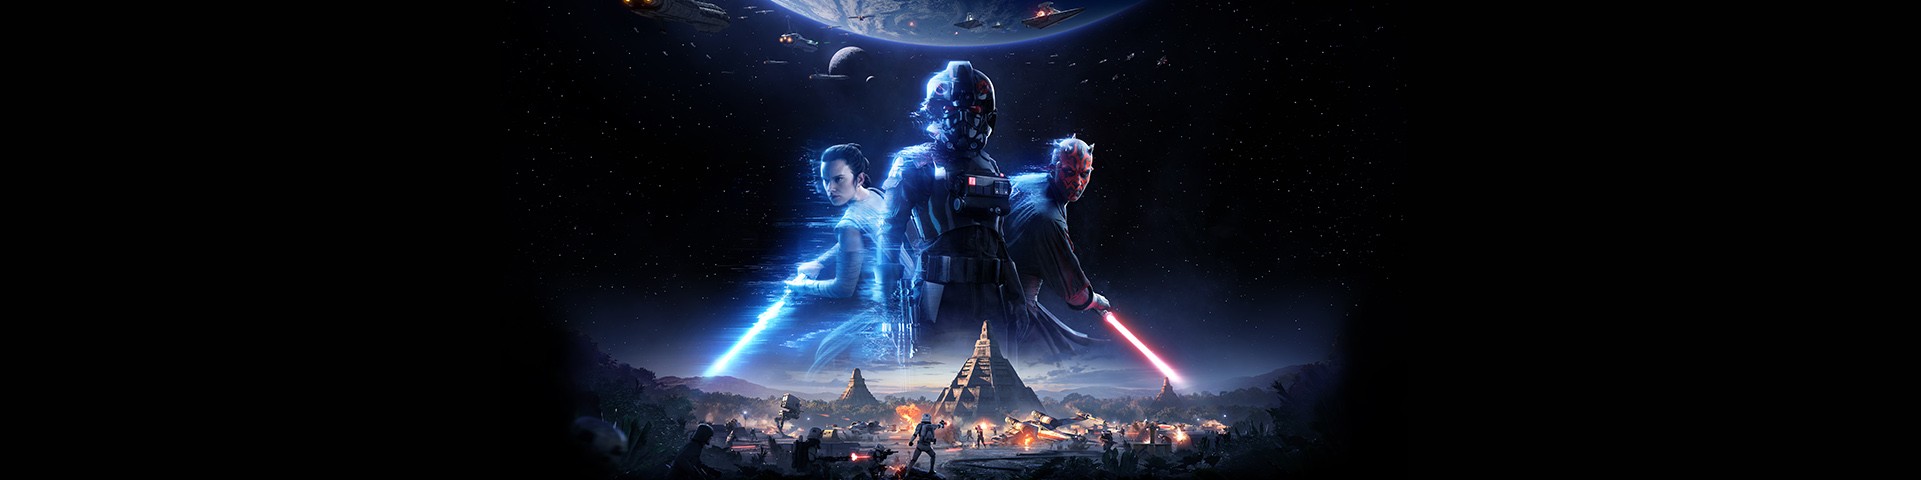 STAR WARS™ Battlefront™ II cover image